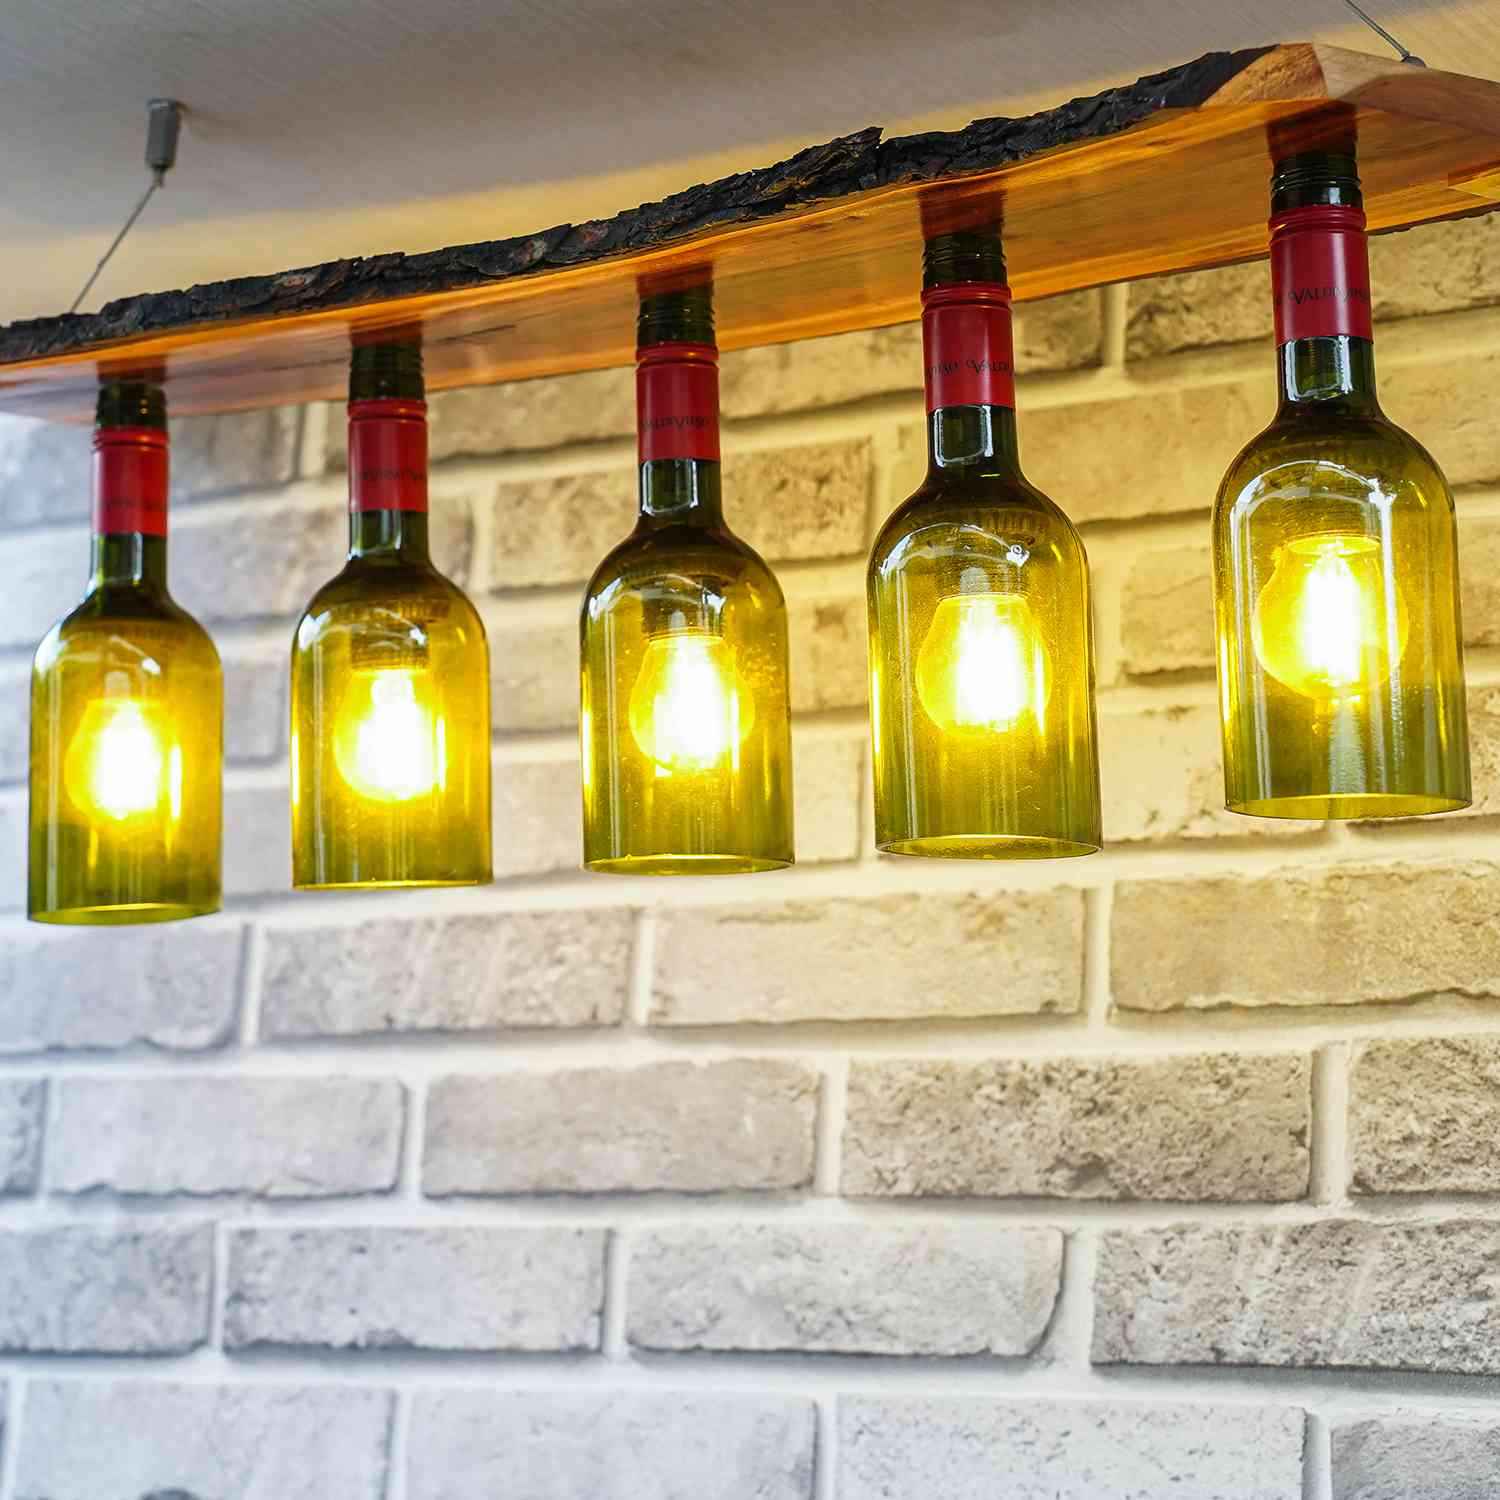 Multi Bulb Ceiling Lamp (Recycled Bottles) - 5 Bottles